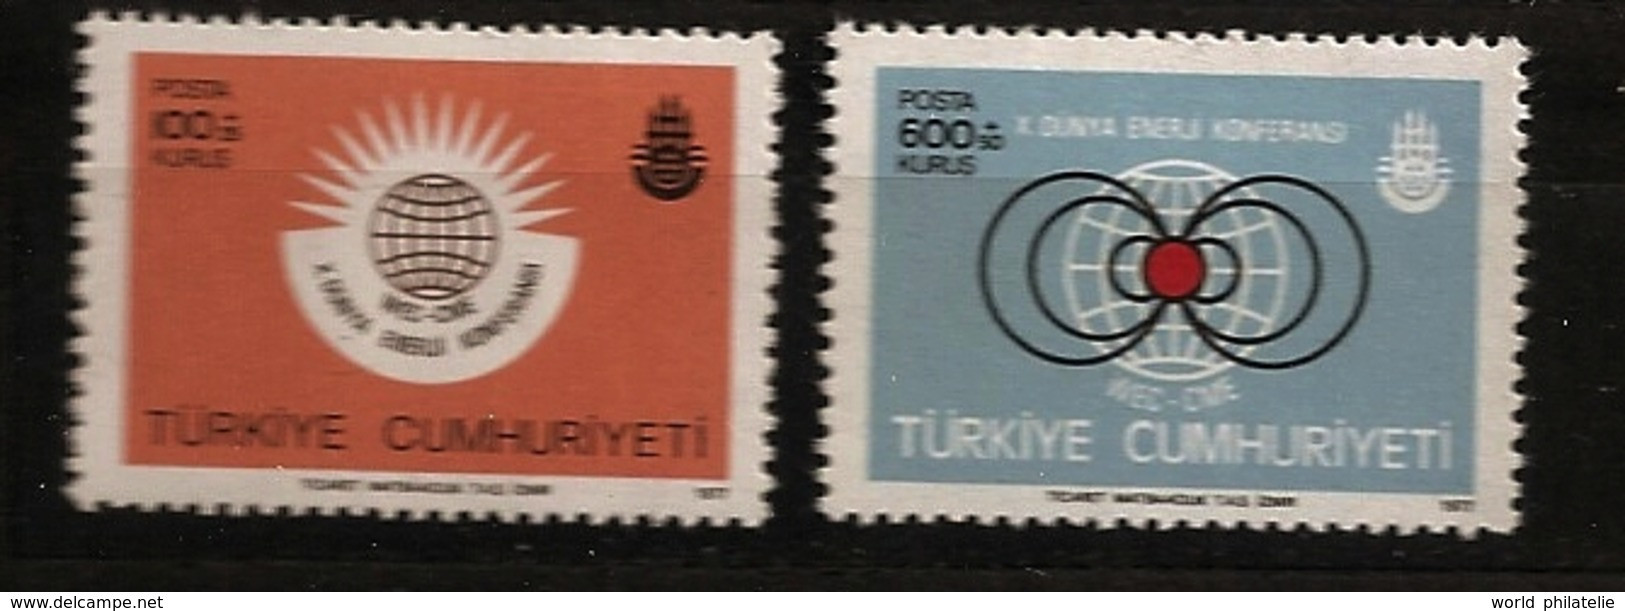 Turquie Türkiye 1977 N° 2198 / 9 ** Energie, Conférence Mondiale, Atome, Nucléaire, Gaz, Pétrole, Charbon, Electricité - Ongebruikt